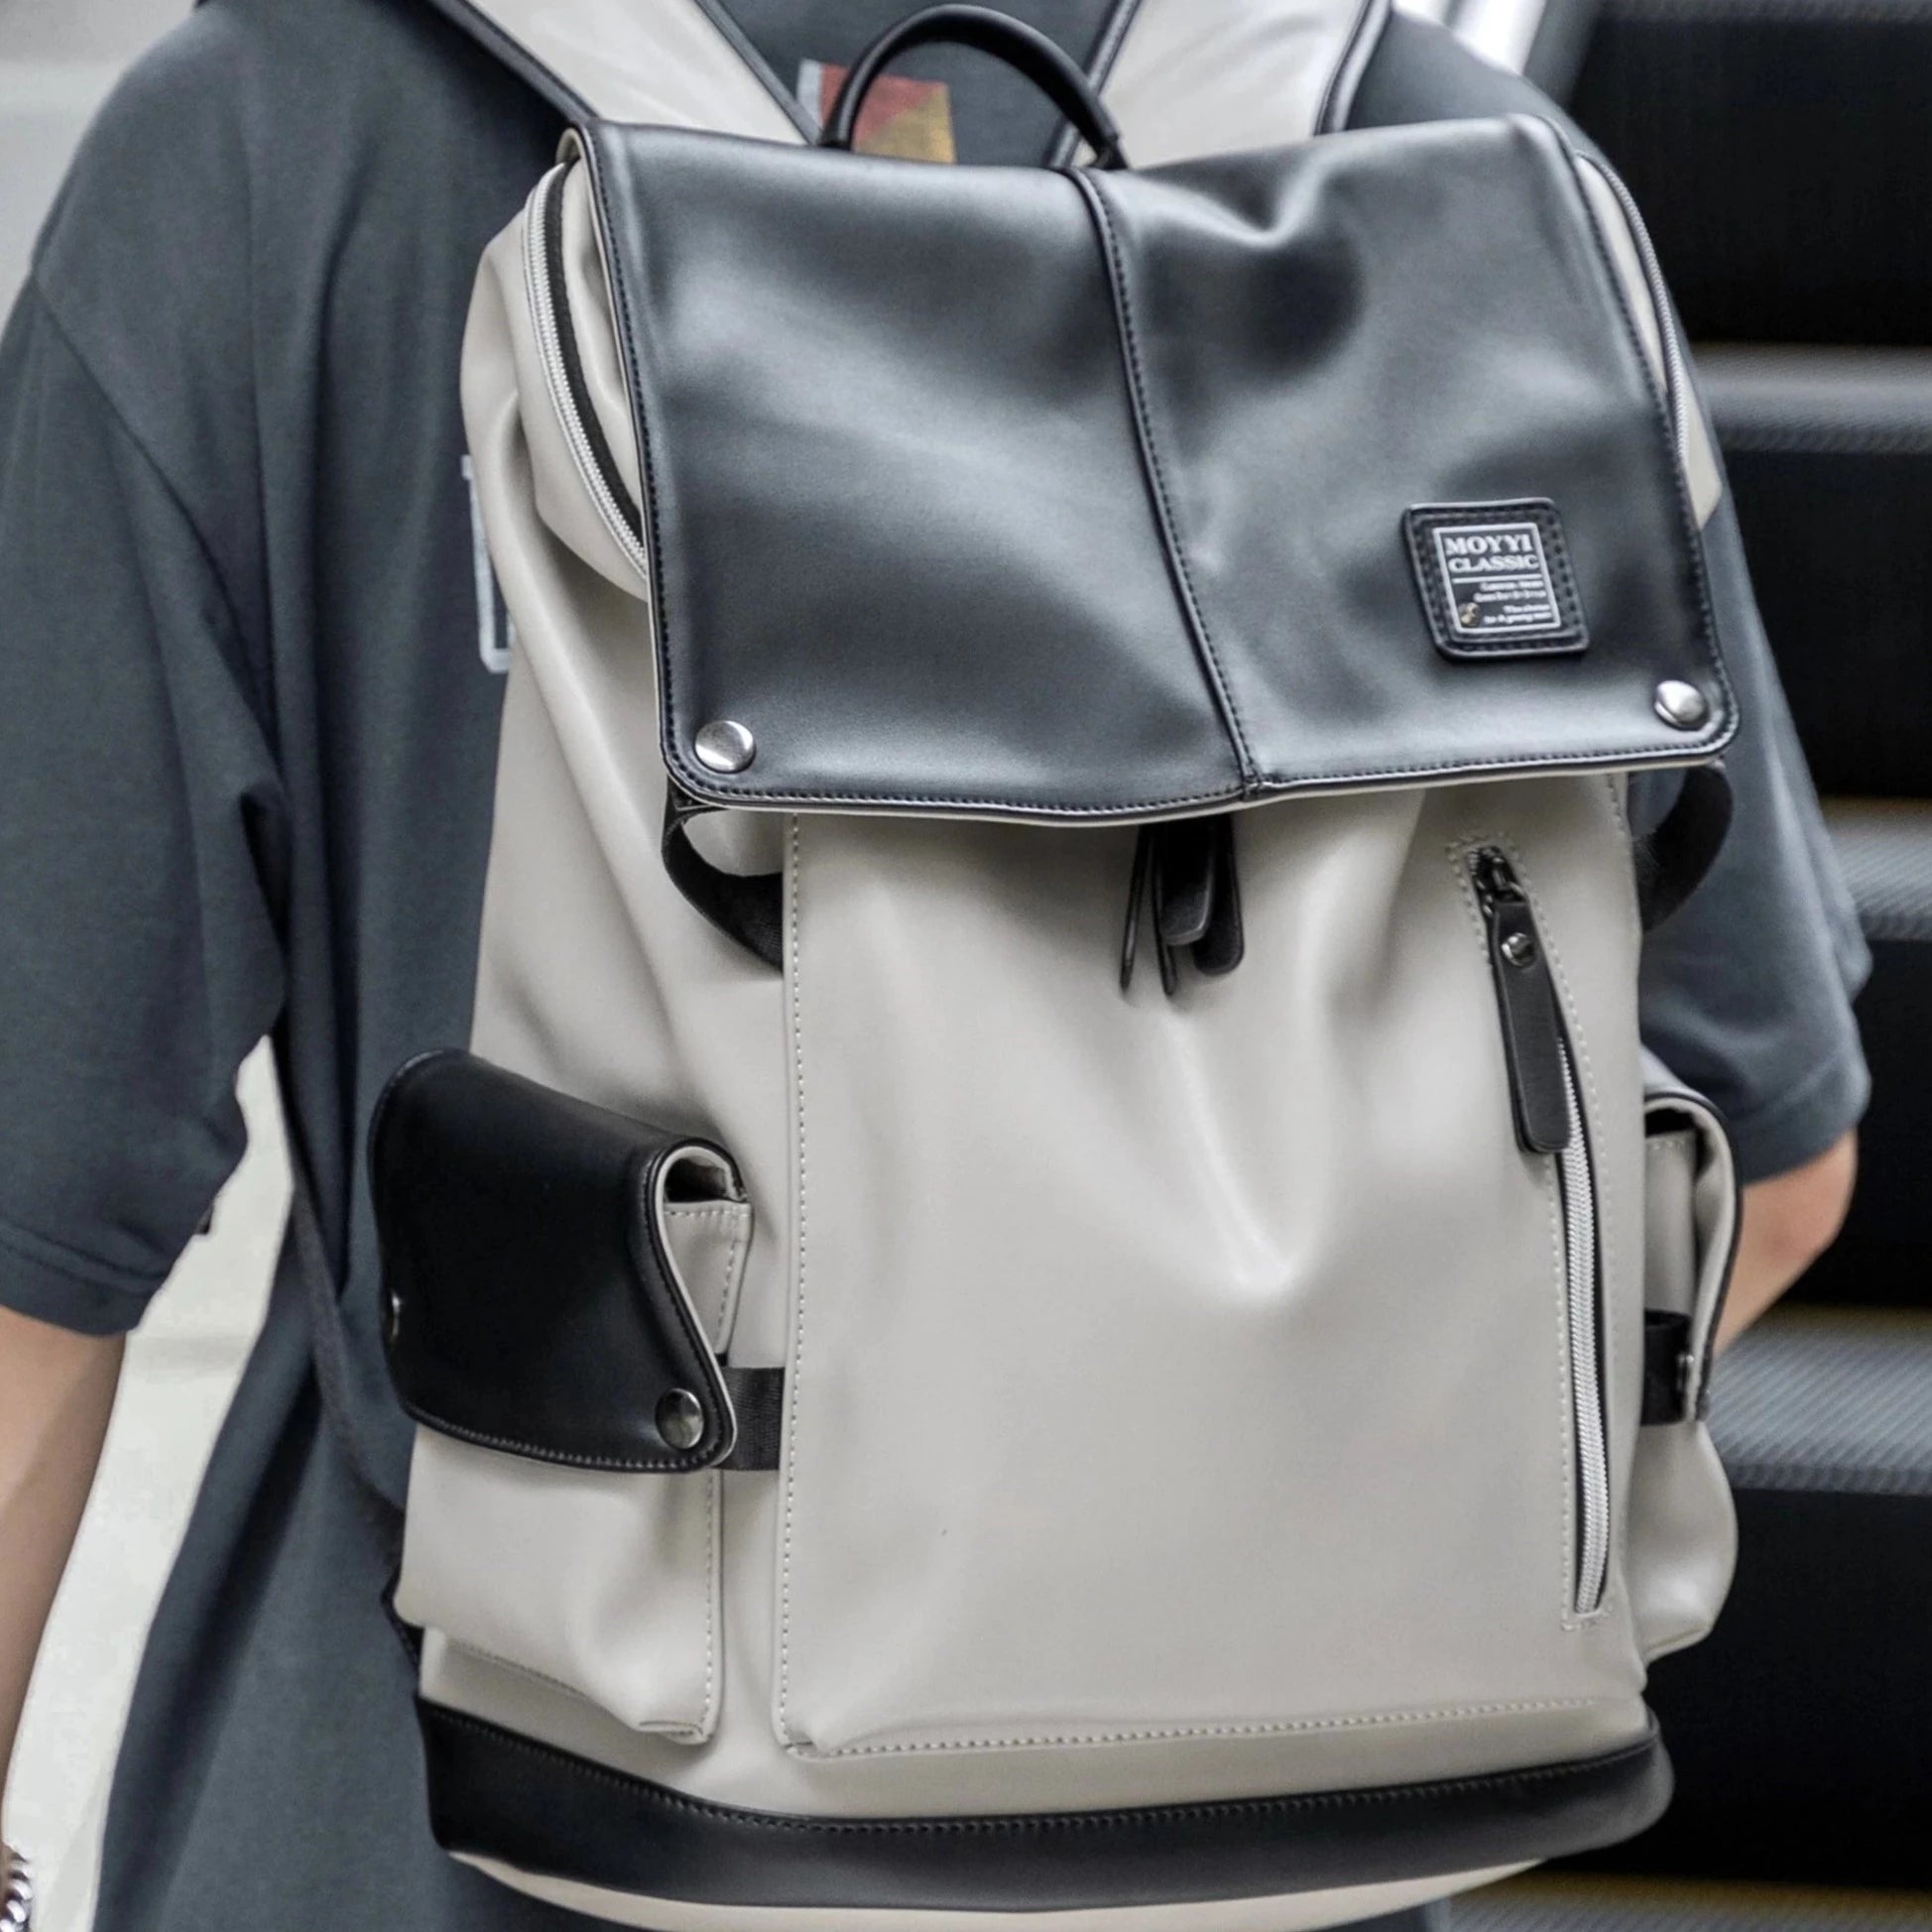 Unisex Black & White Vegan Leather Flap Backpack with USB Power Plug